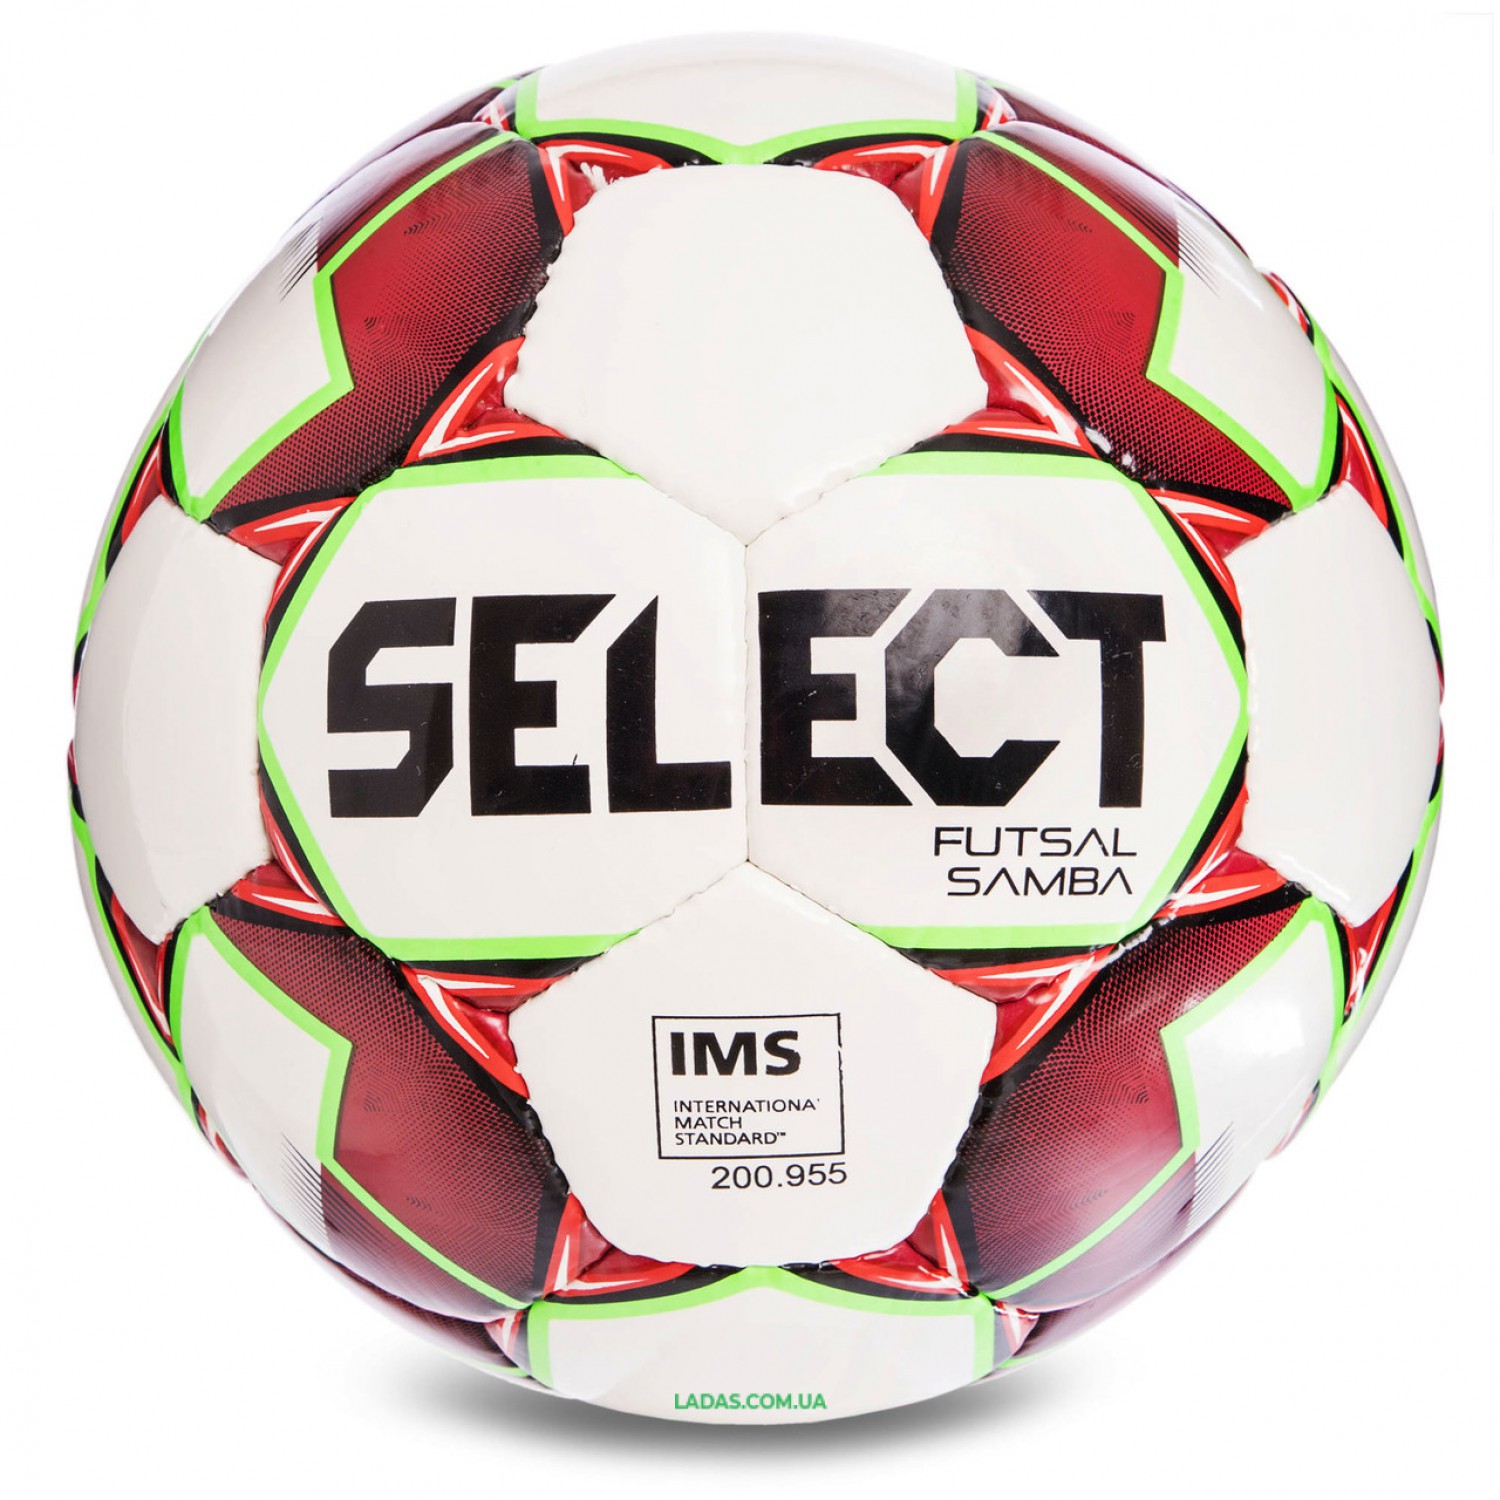 Мяч футзальный №4 SELECT FUTSAL SAMBA IMS NEW (FPUS 1200, бело-красный)